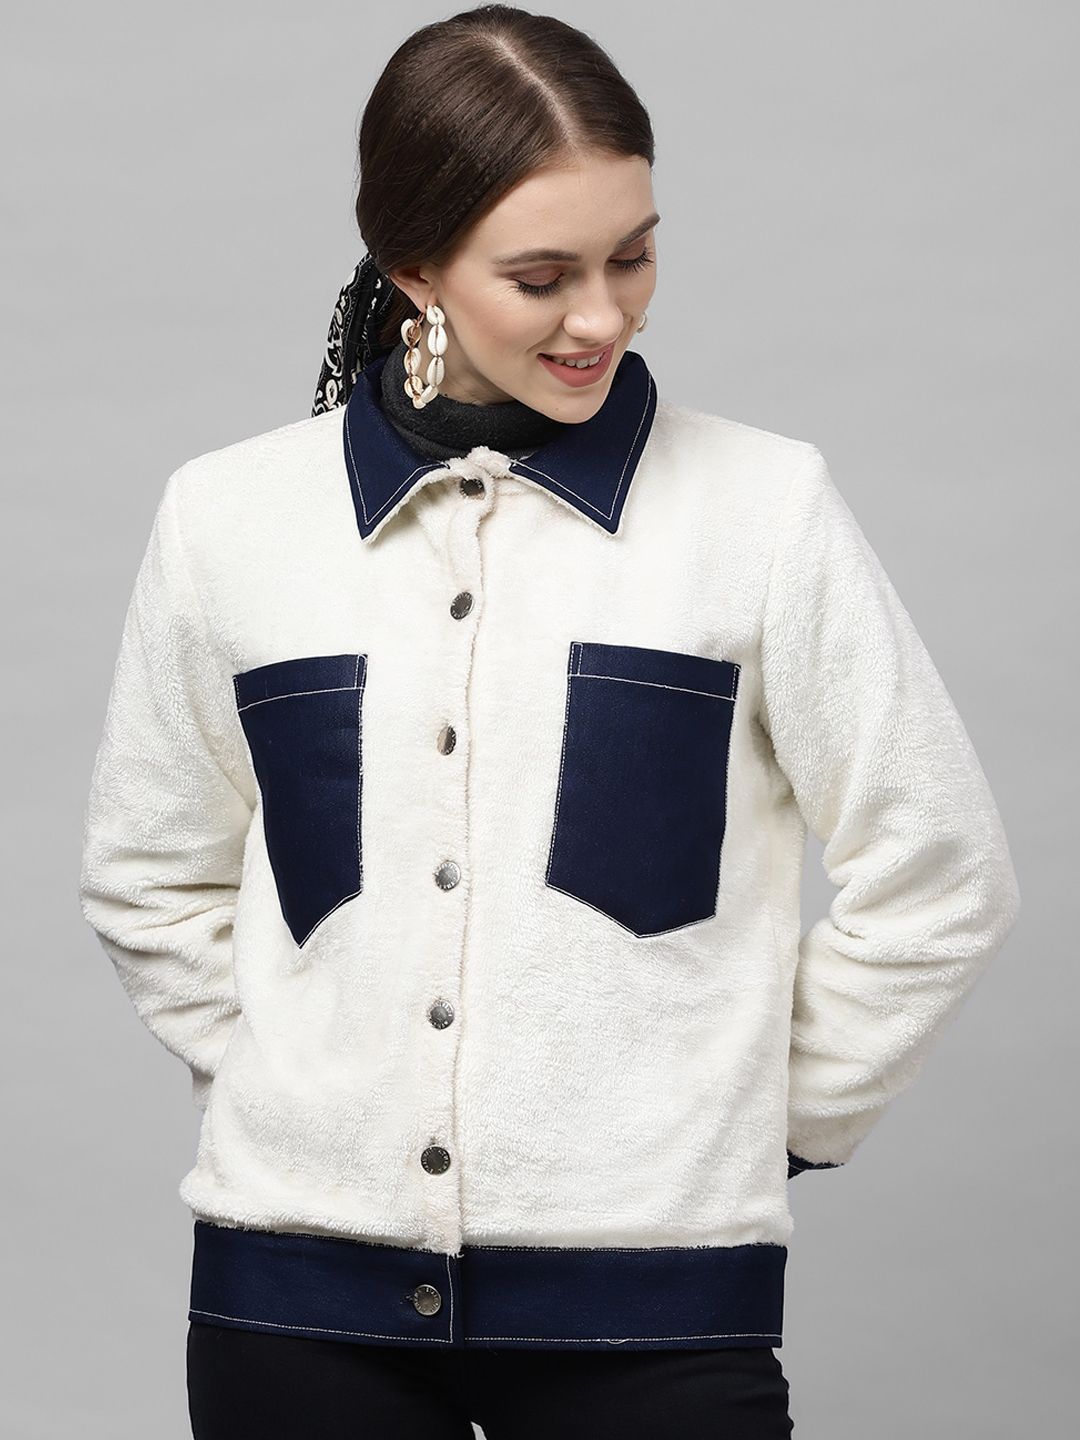 Athena Women White Colourblocked Tailored Jacket Price in India